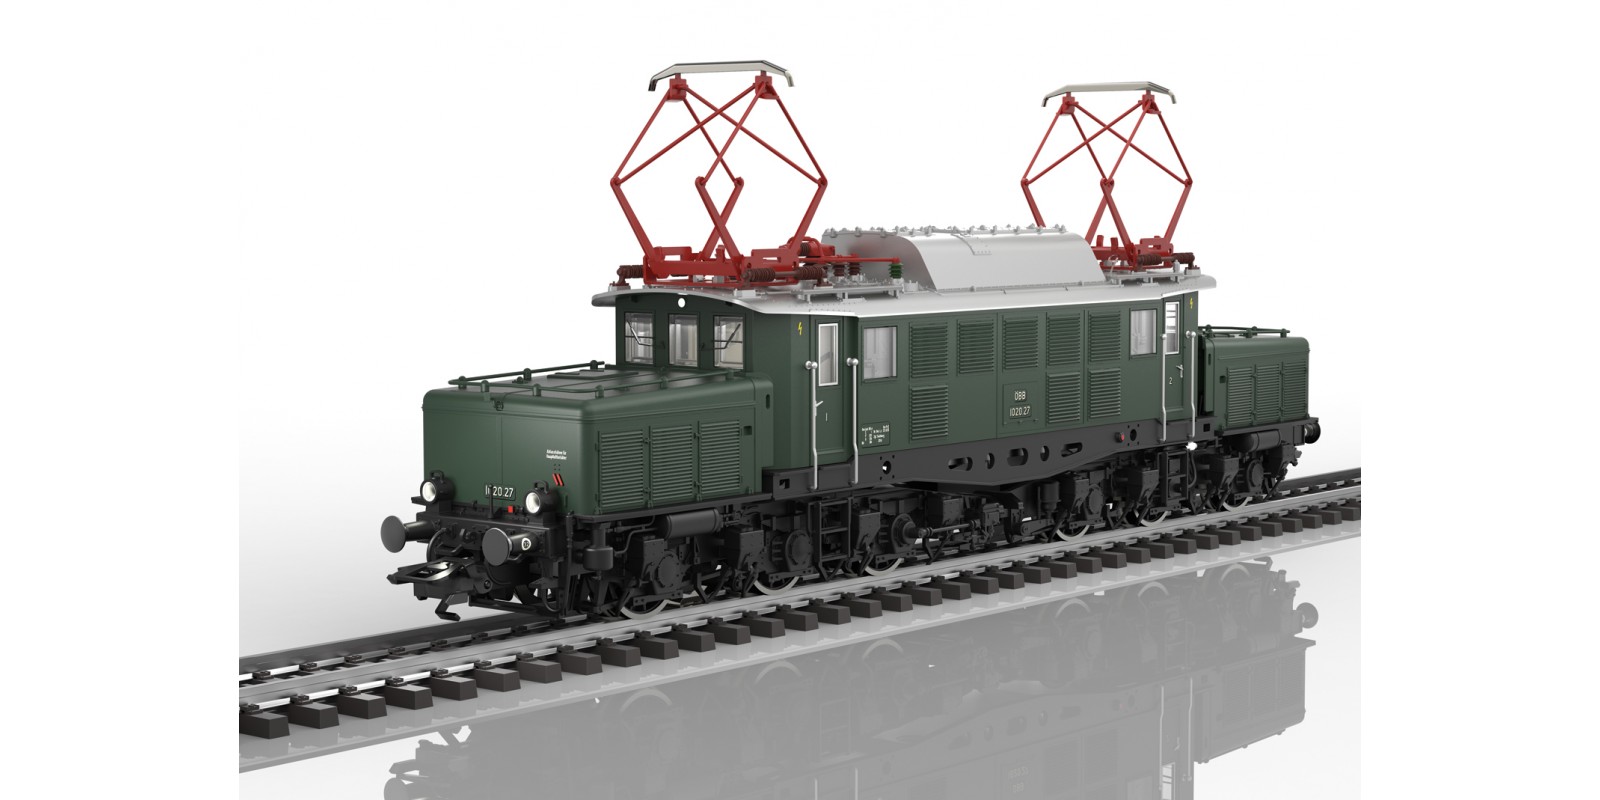 39991 Class 254 Electric Locomotive